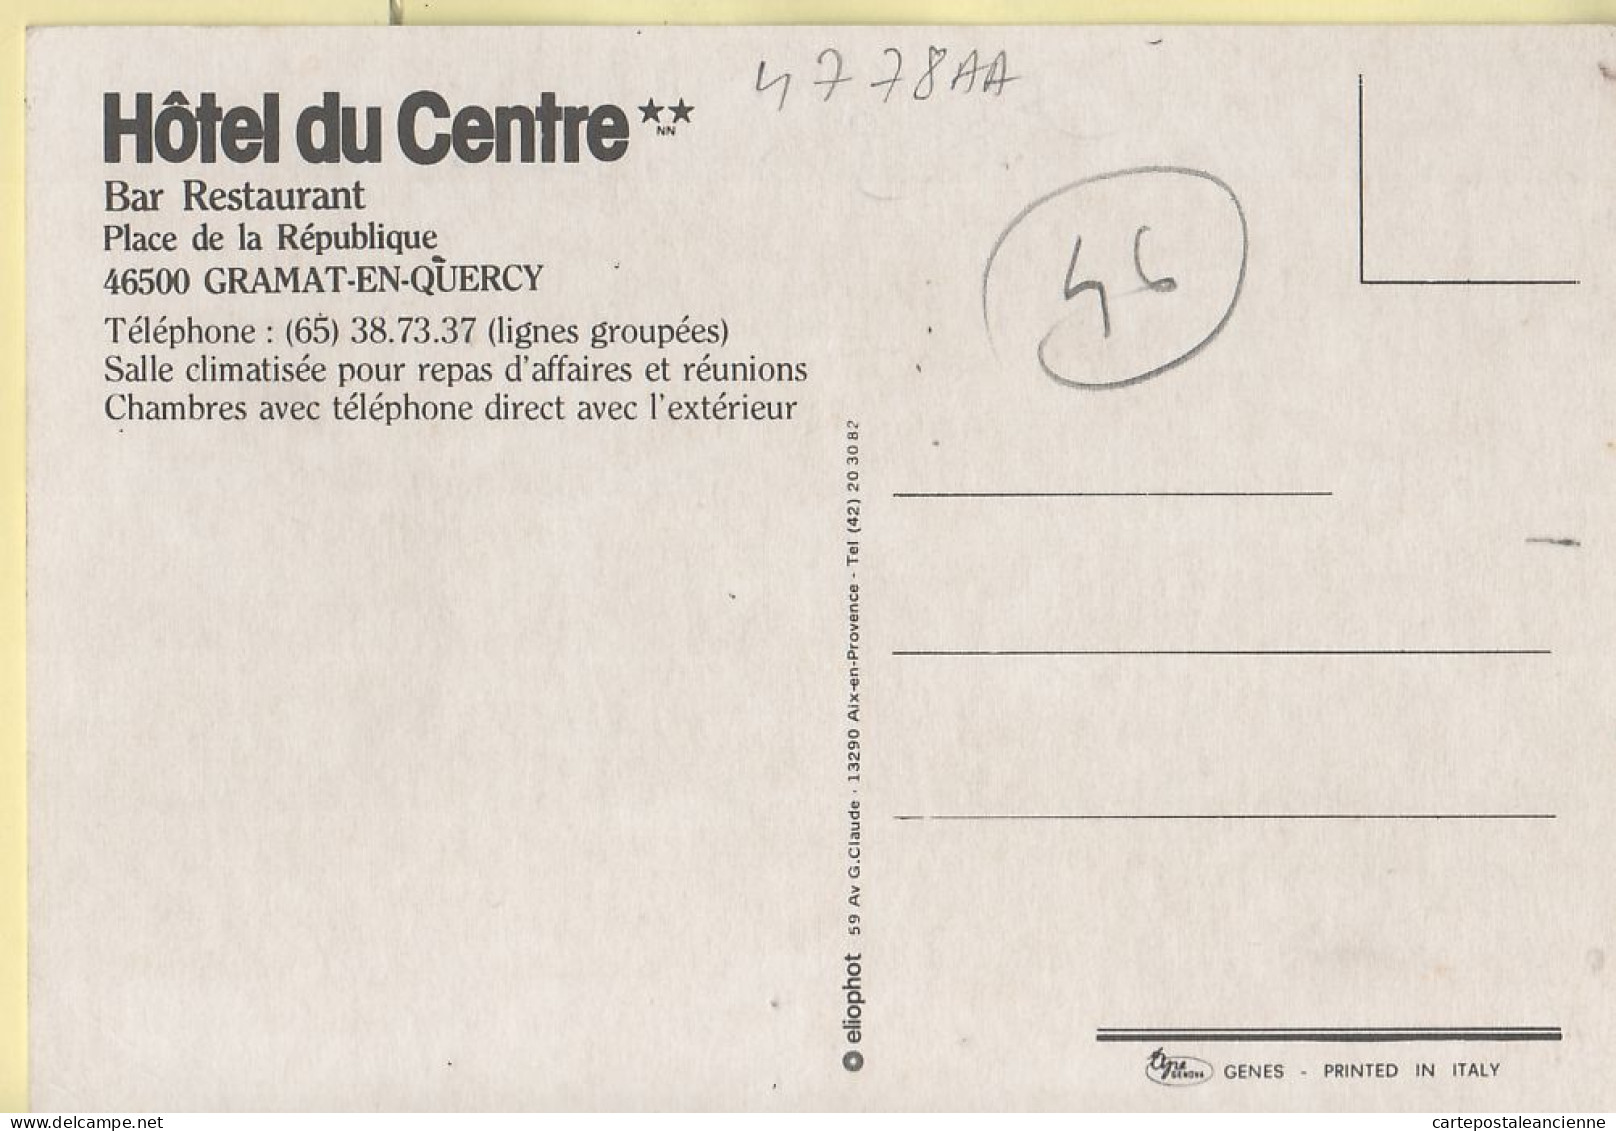 20296 / ⭐ ◉ GRAMAT Lot Hotel Bar Restaurant Du CENTRE -Période GRIMAL- Place De La République 1975s - ELIOPHOT GENES - Gramat